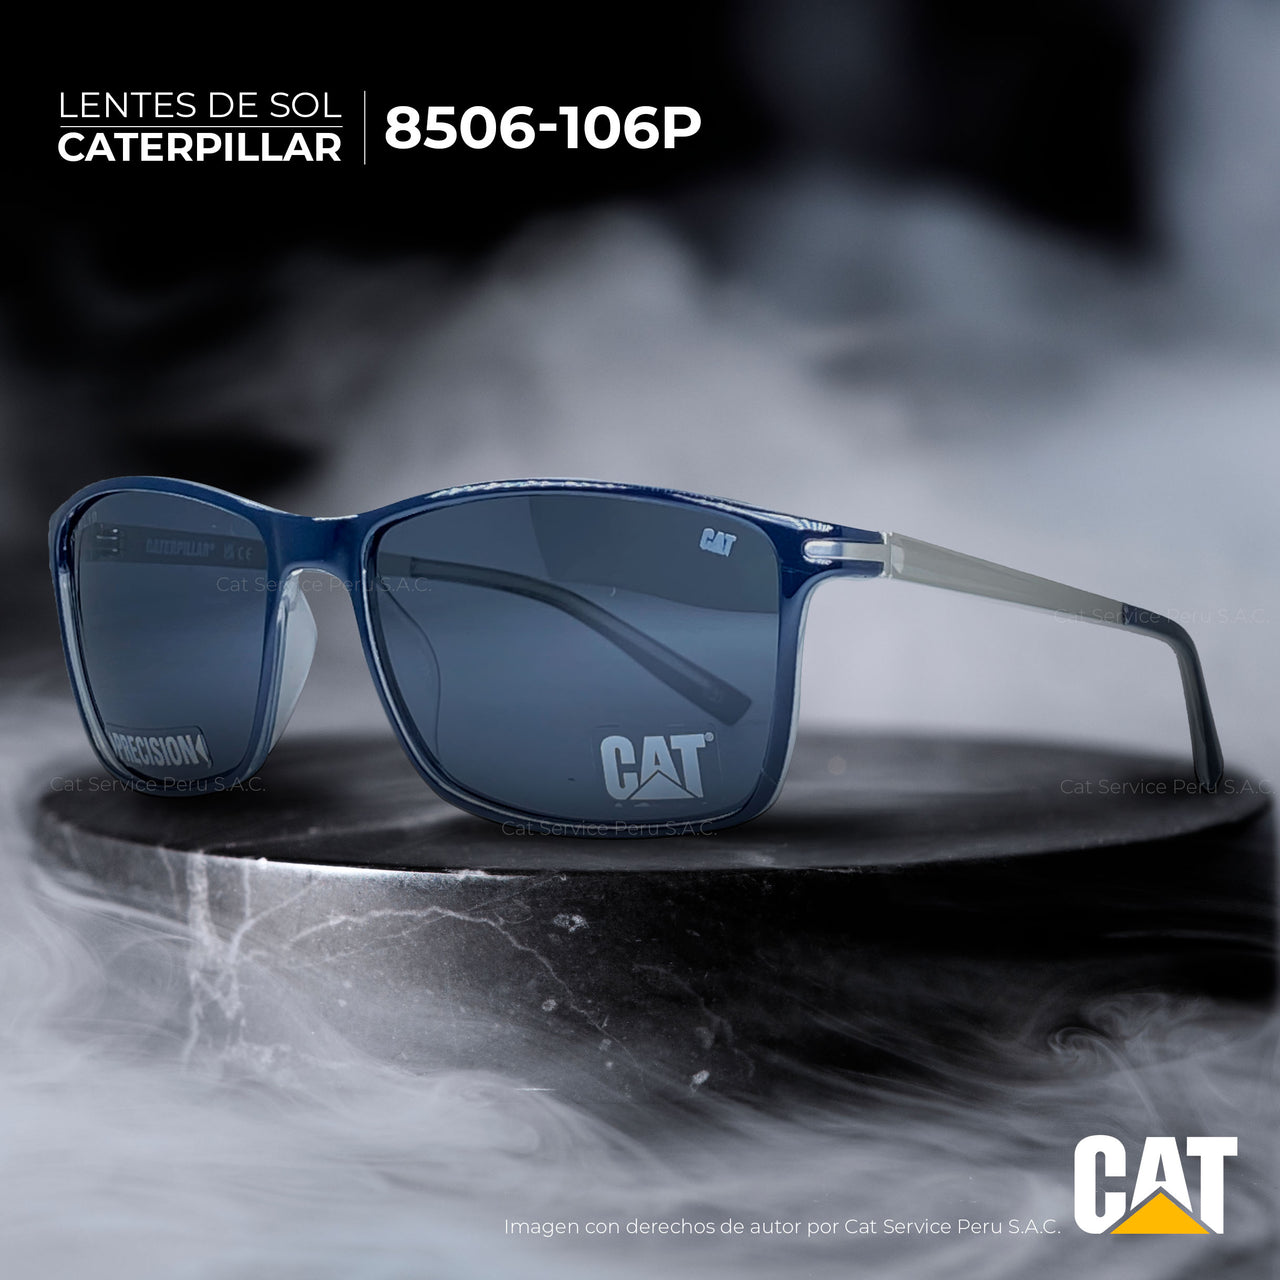 कैट सीपीएस-8506-106पी ध्रुवीकृत ग्रे मून्स धूप का चश्मा 